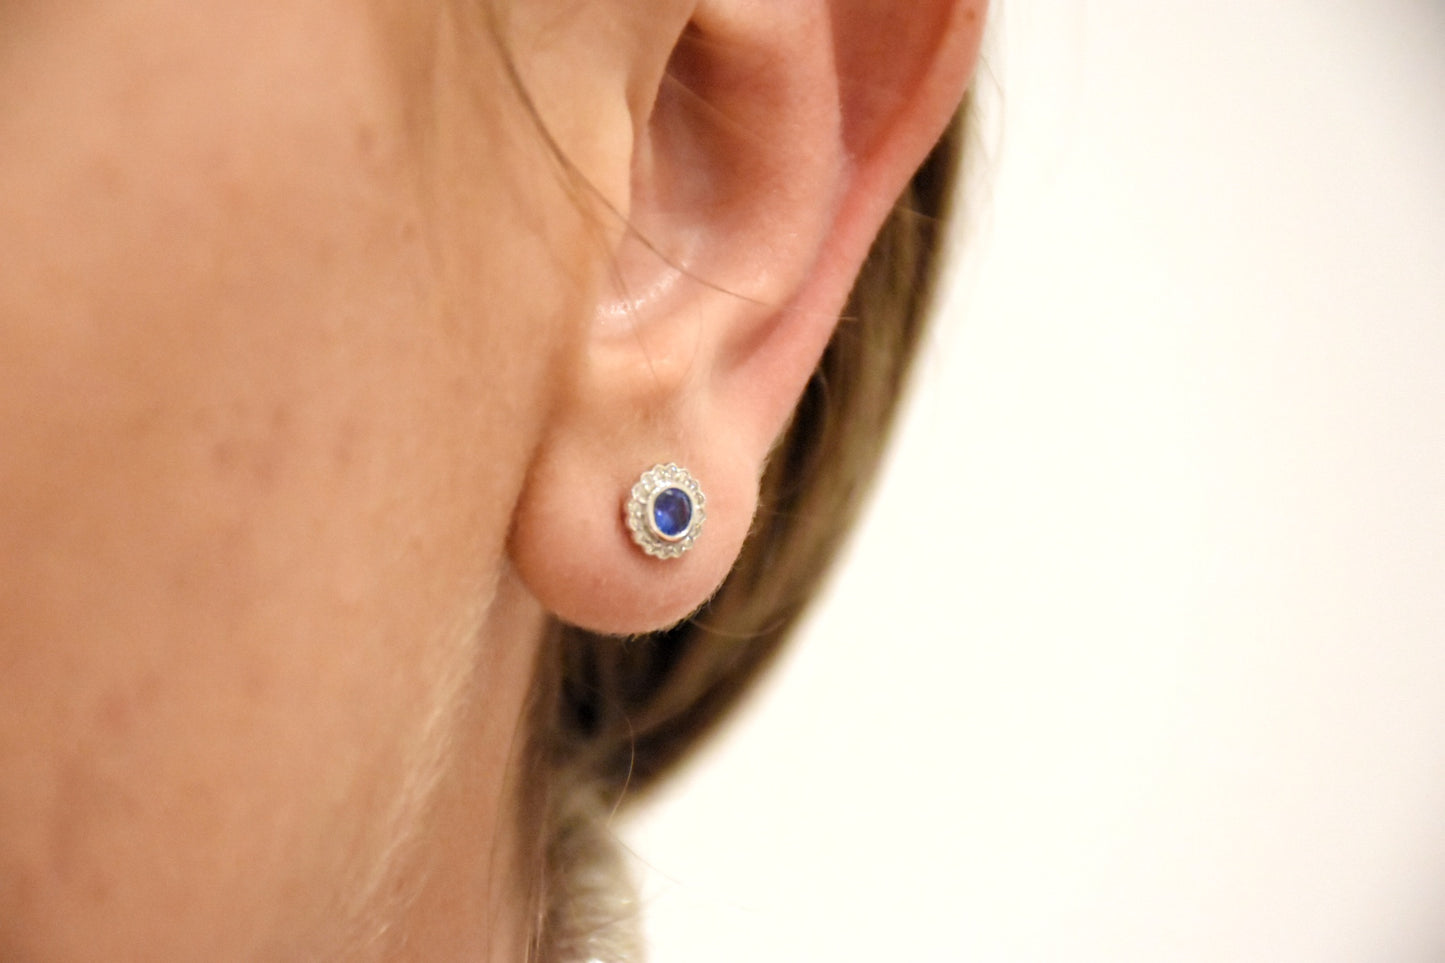 Boucles d'oreilles